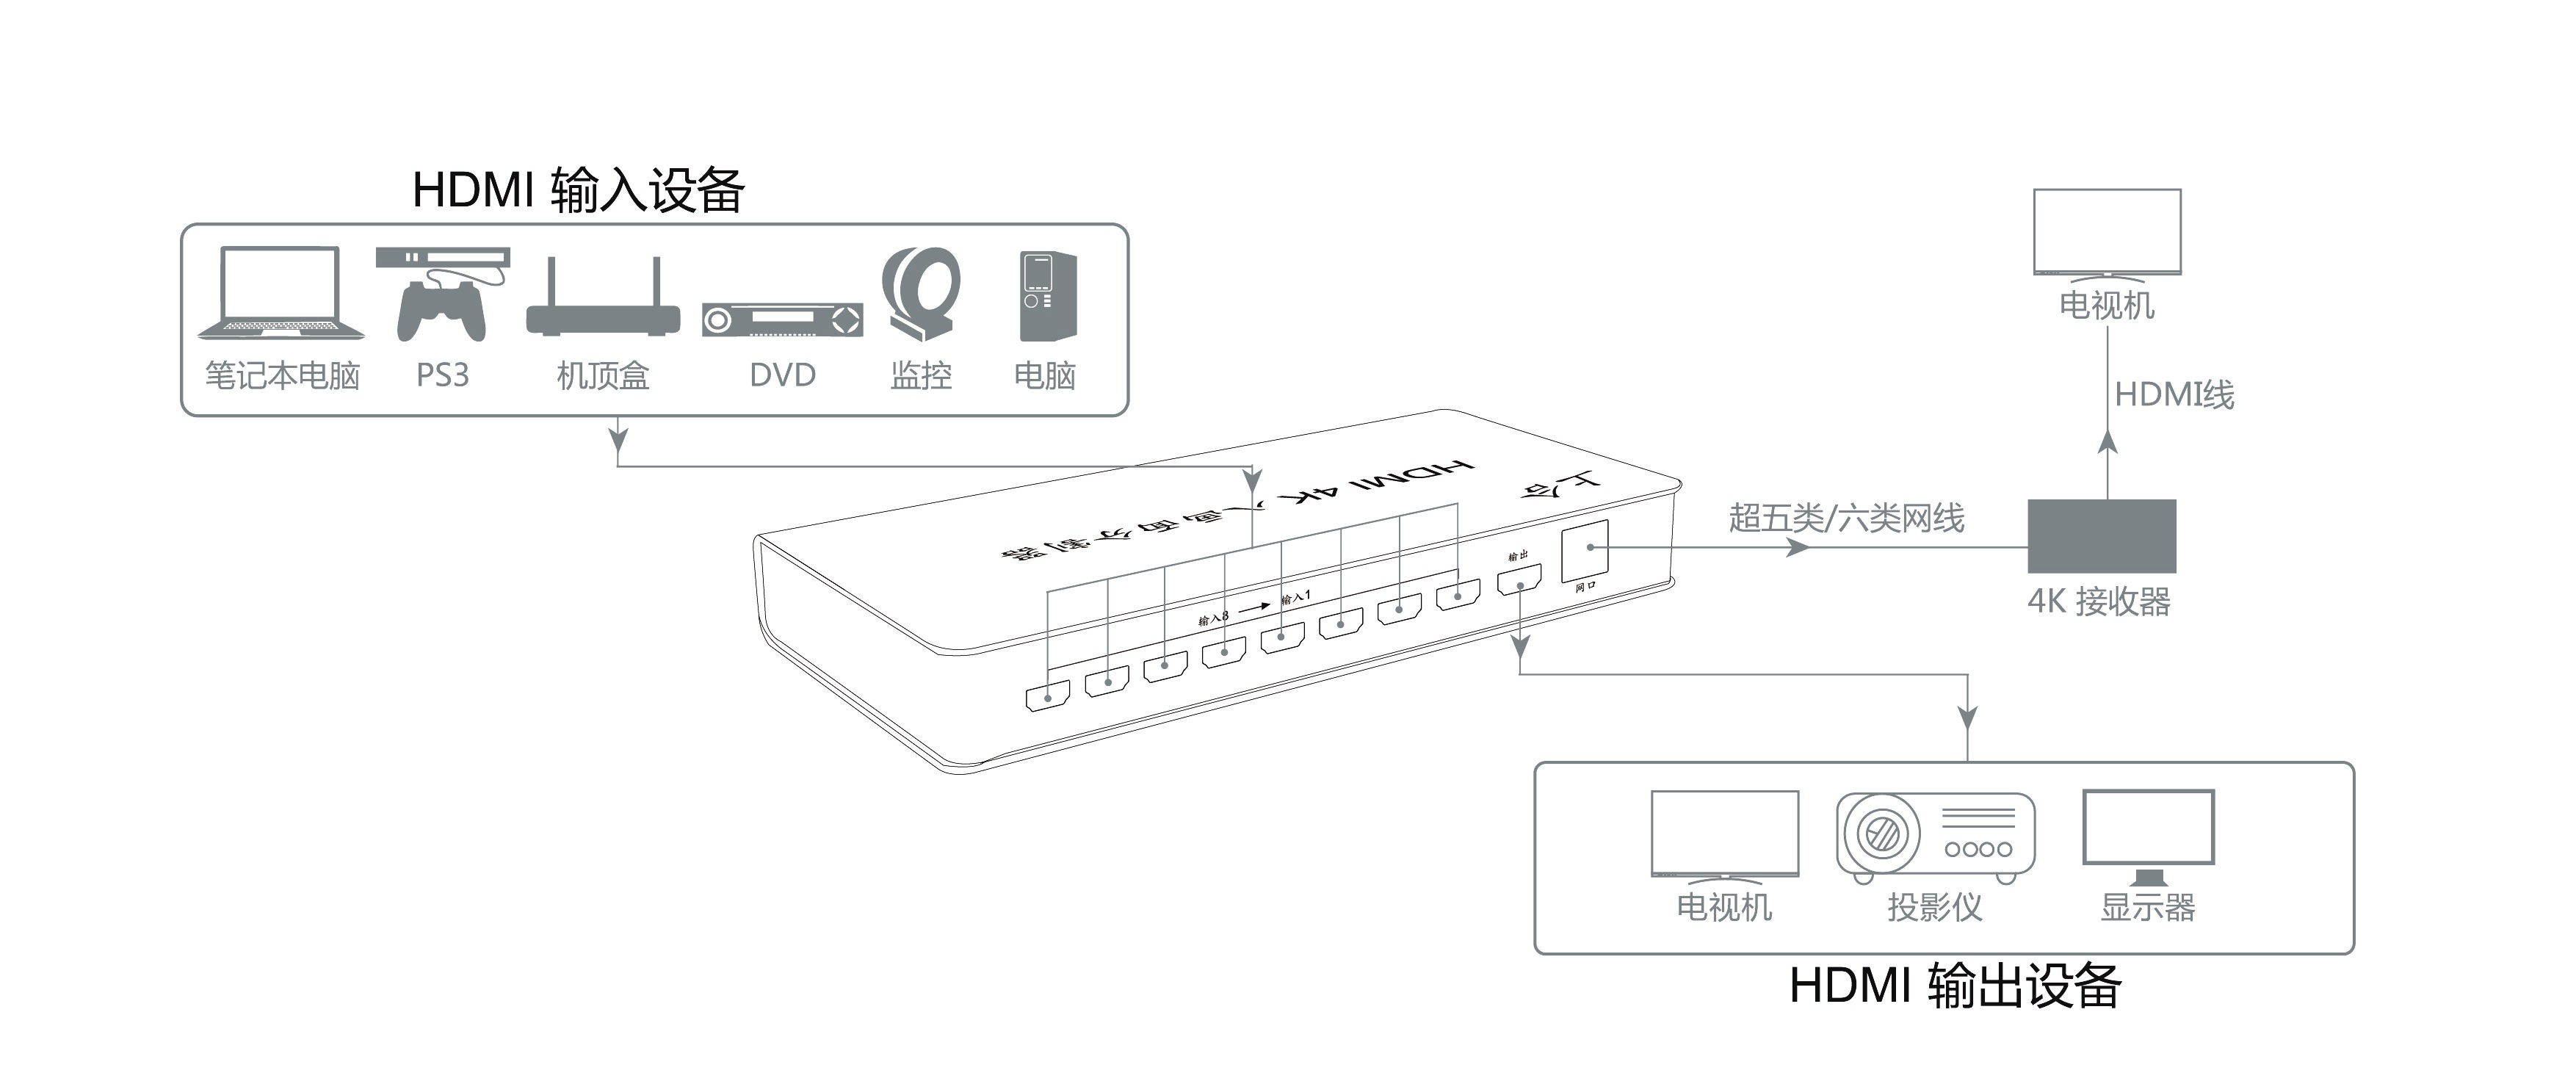 同三维T9000-H81HDMI 4K八画面分割器